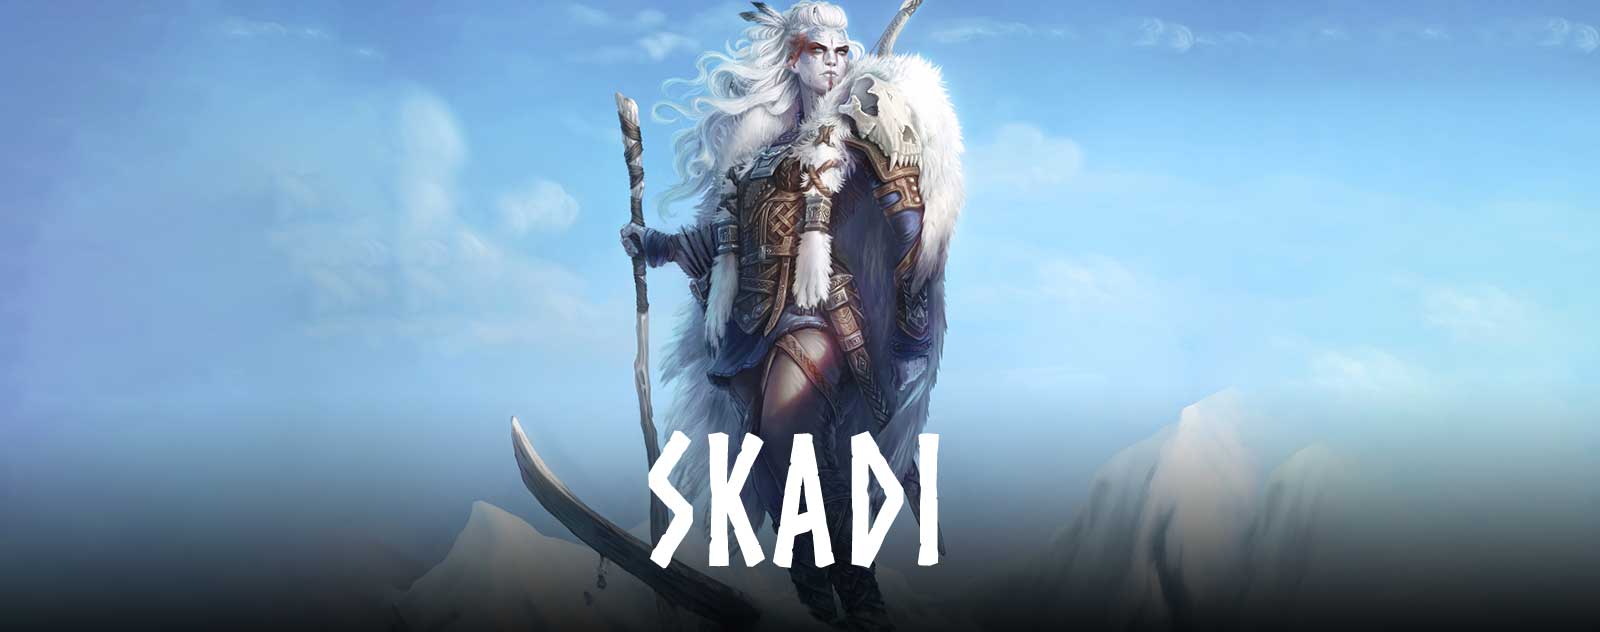 Skadi déesse nordique